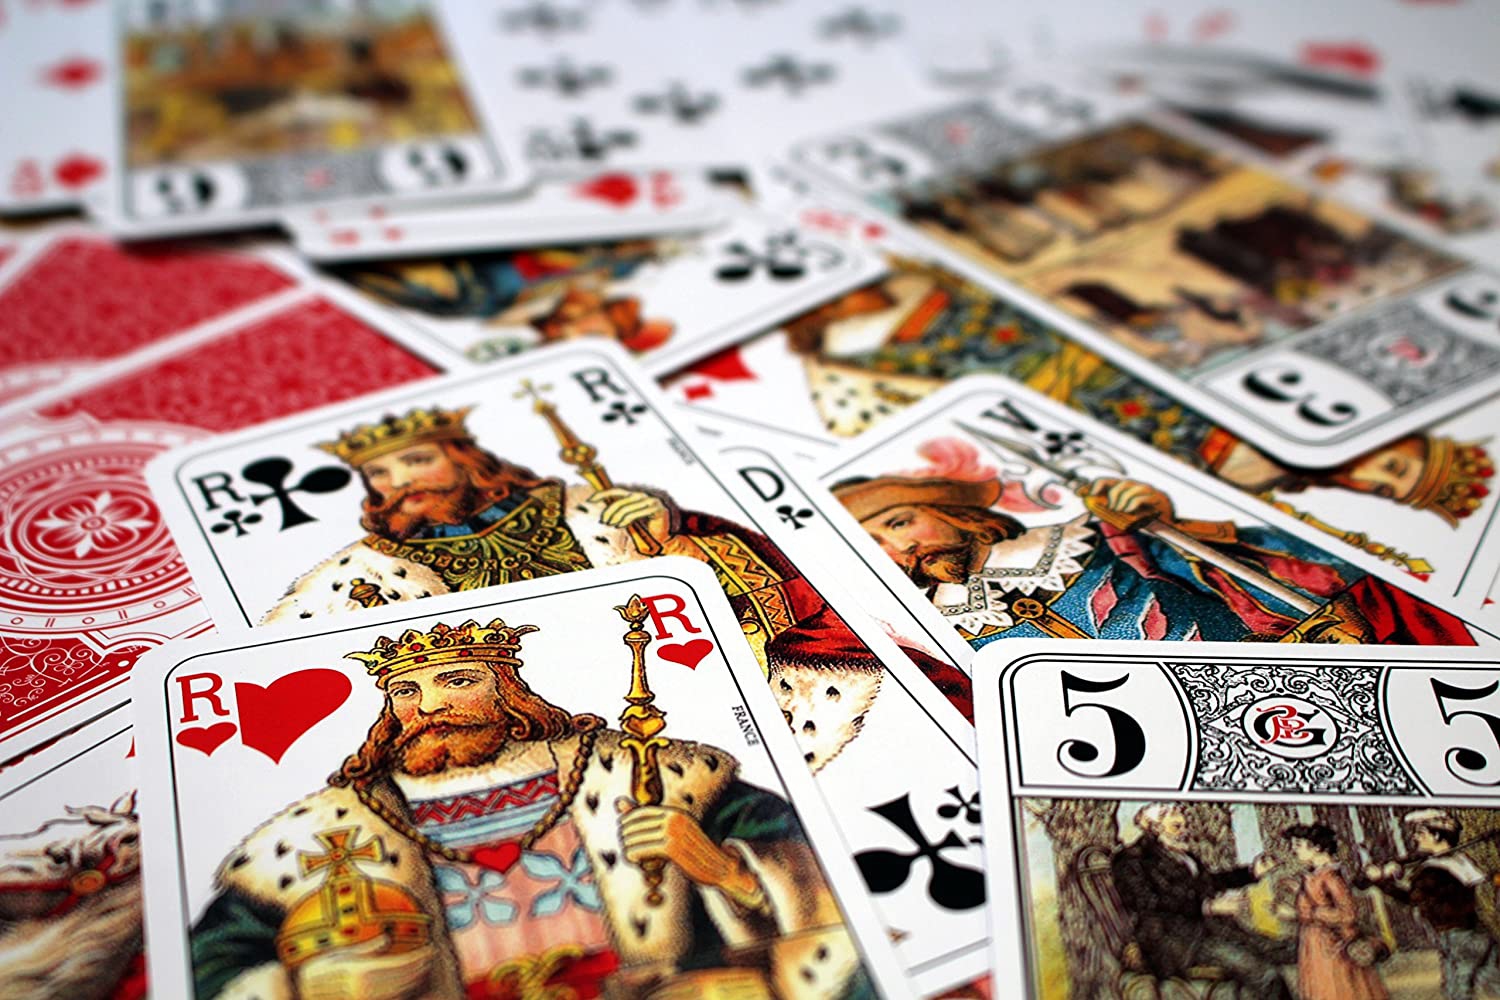 Tarot 78 cartes Grimaud Expert - Jeux de cartes - Acheter sur